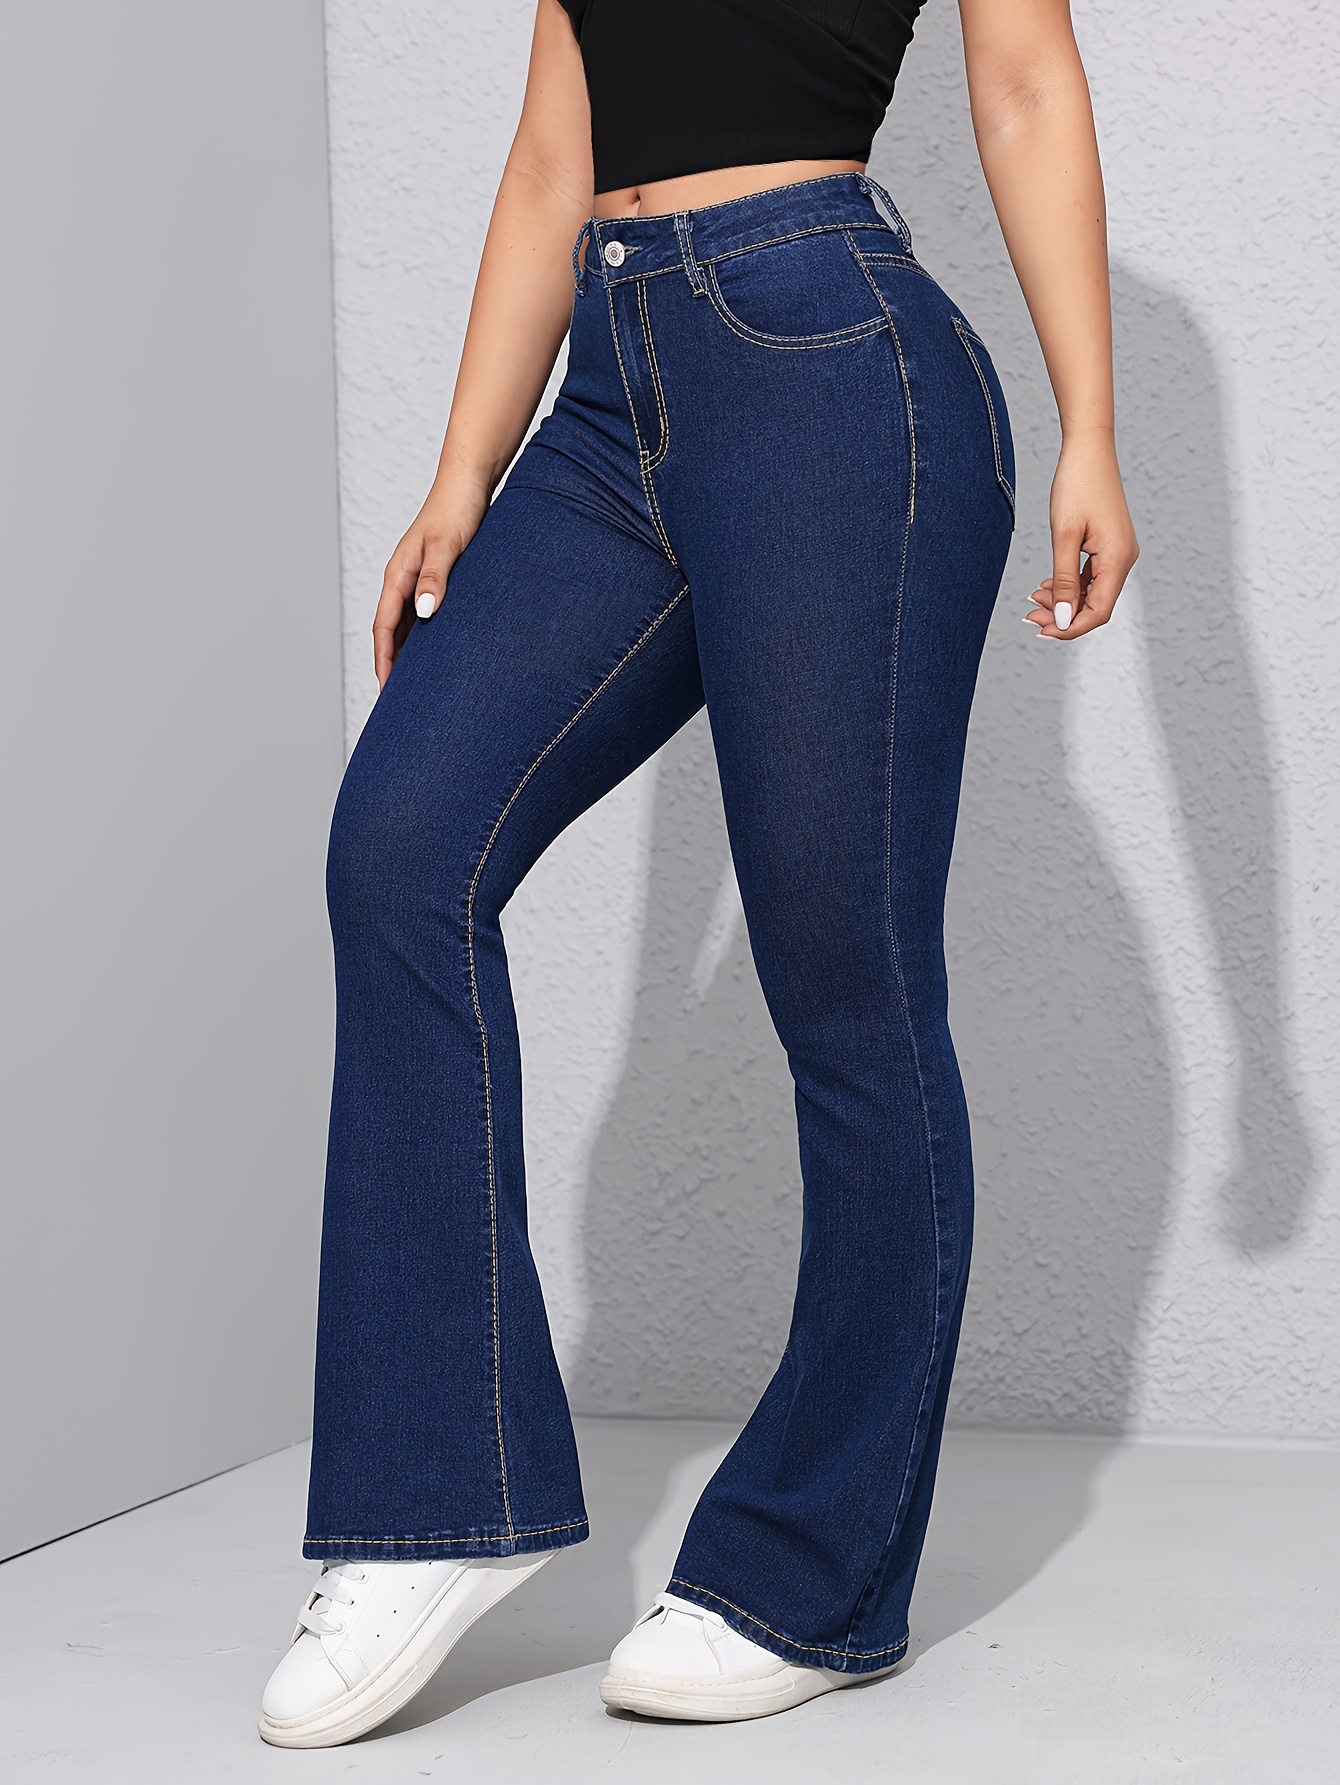 Blue High Stretch Bootcut Jeans, Slim Fit Slant Pockets Versatile Denim  Trousers, Women's Denim Jeans & Clothing